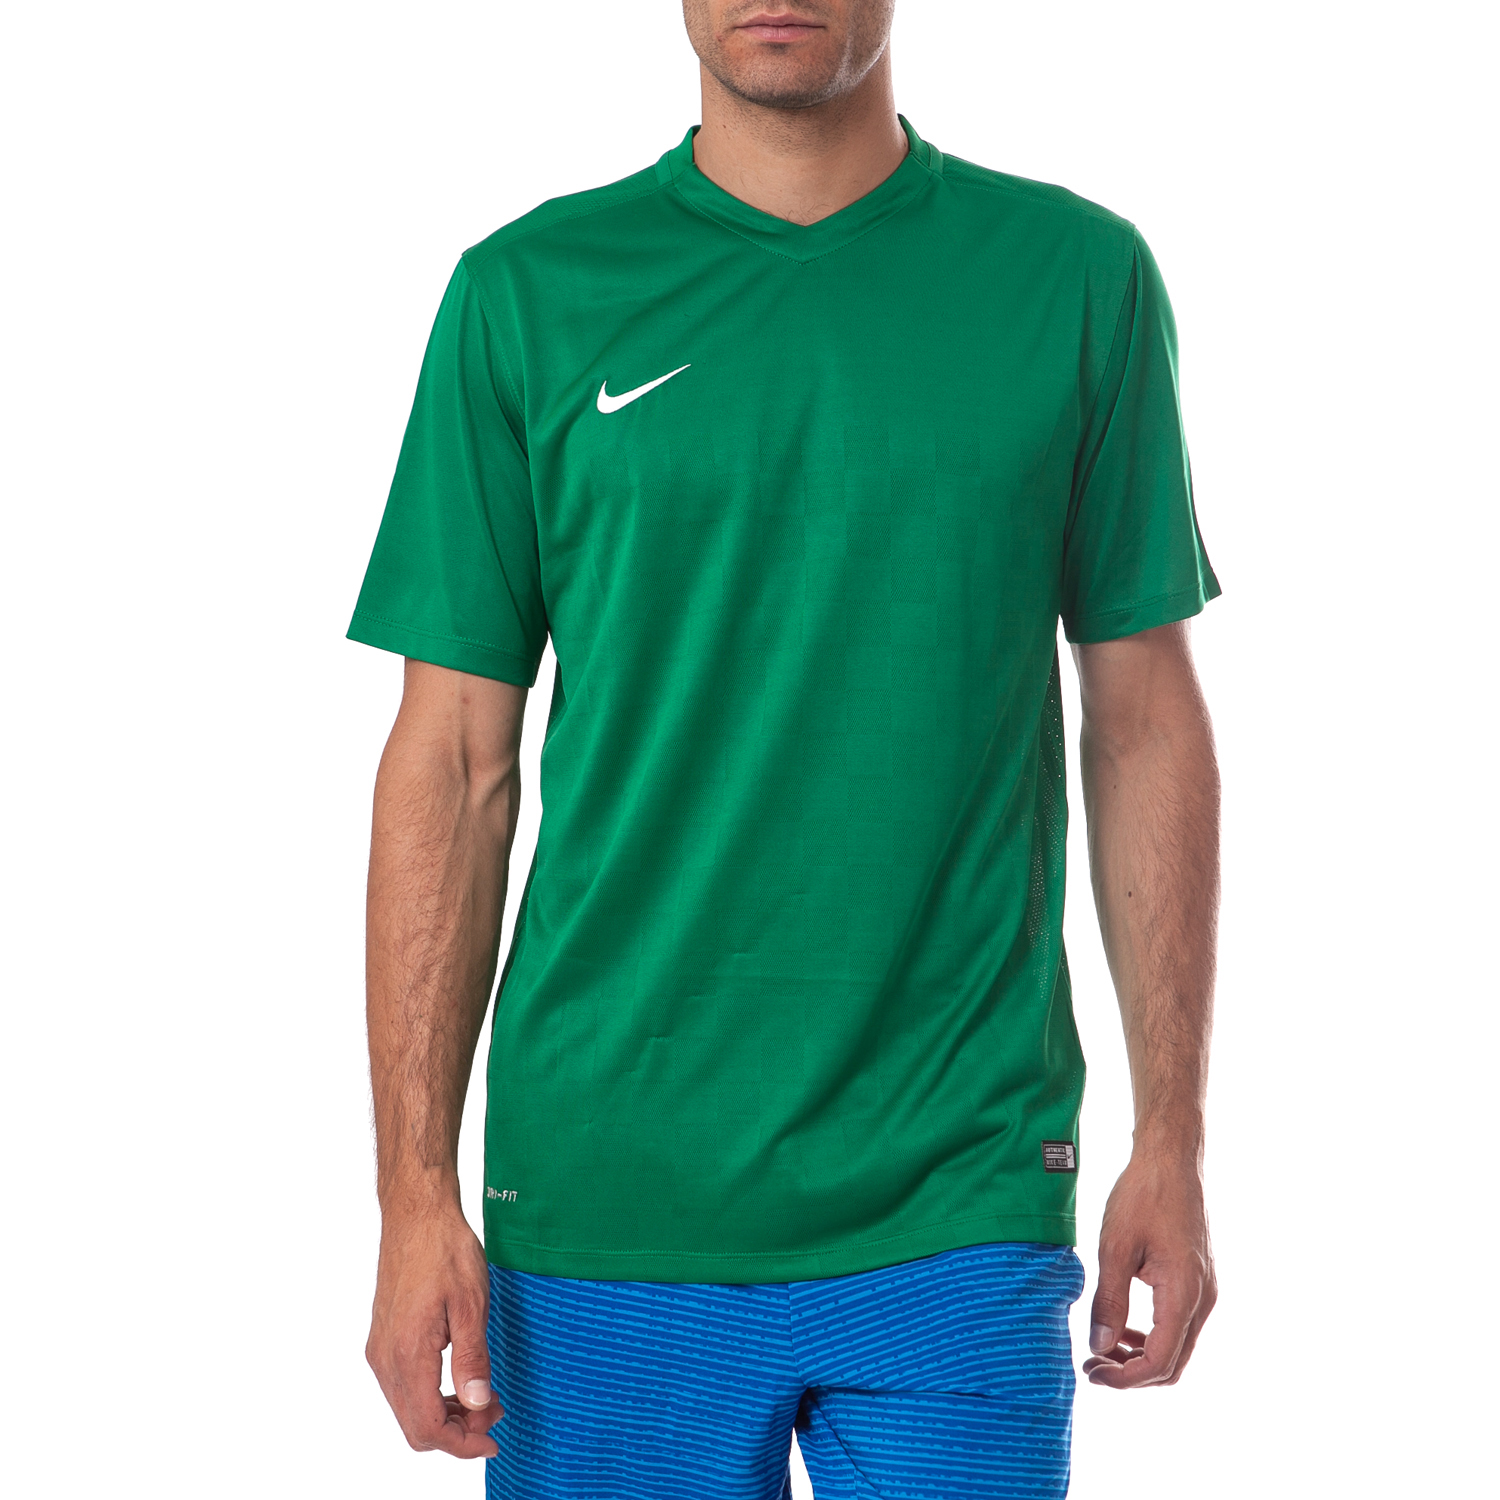 Ανδρικά/Ρούχα/Αθλητικά/T-shirt NIKE - Ανδρική μπλούζα Nike πράσινη